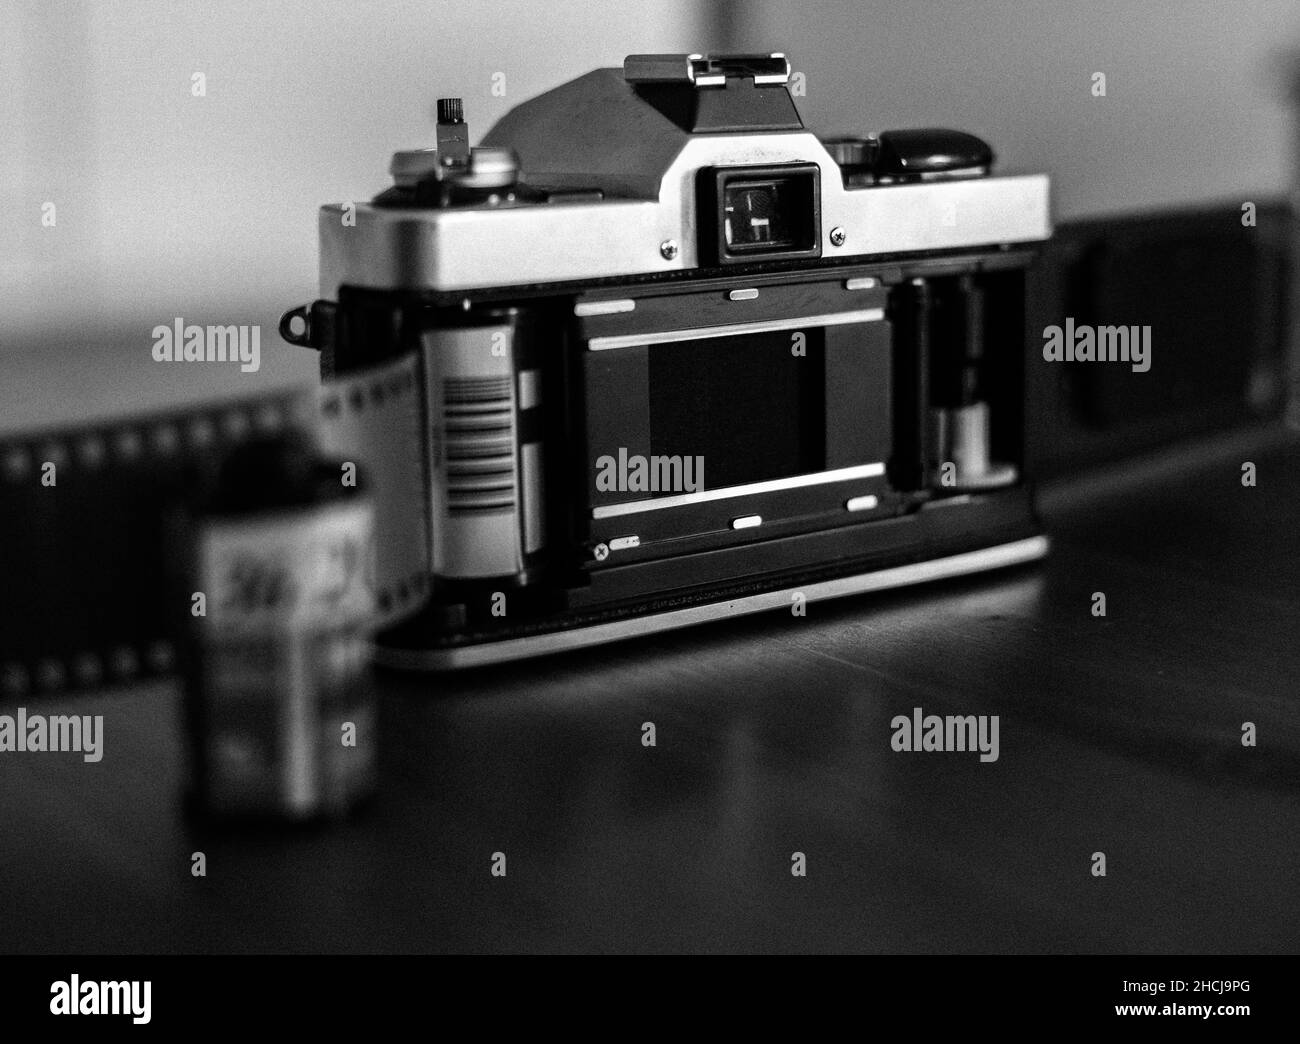 Prise de vue en niveaux de gris d'un ancien appareil photo à film sur la table Banque D'Images